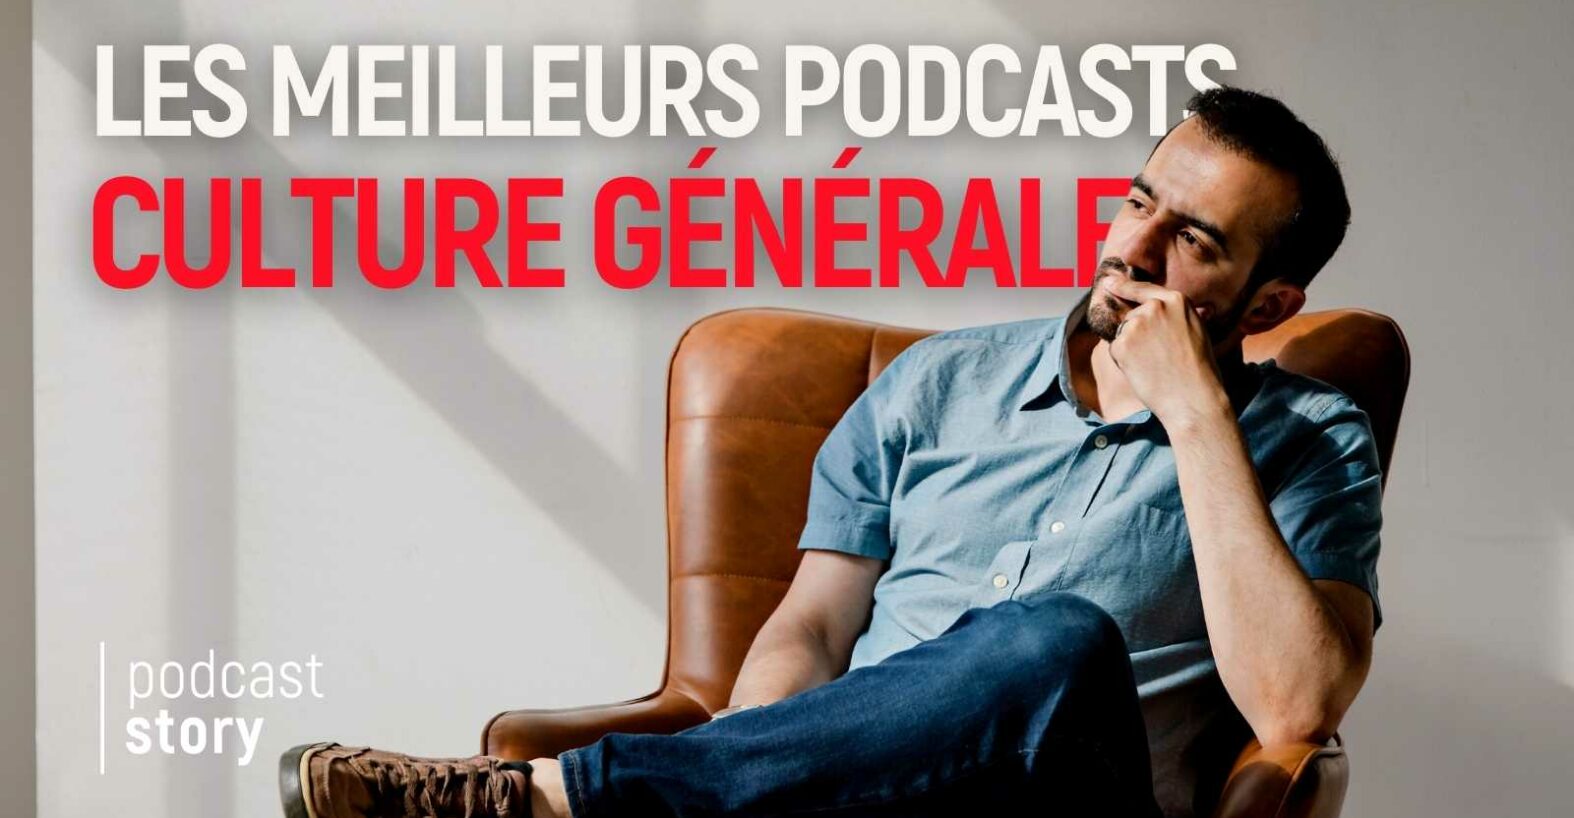 Les meilleurs podcasts culture générale